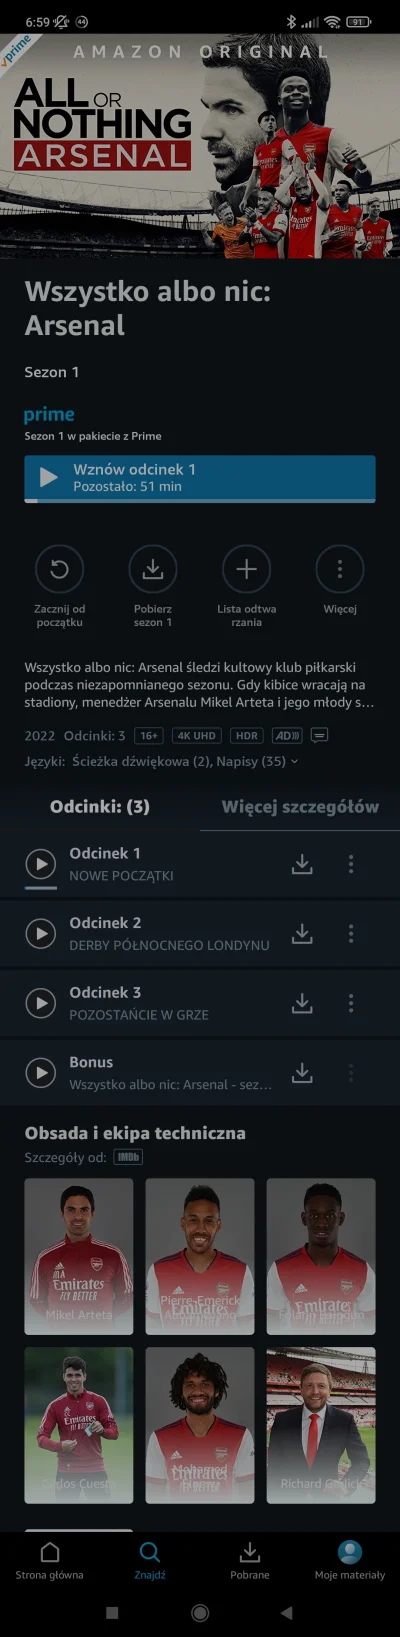 Kultafon - Pierwsze 3 odcinki All or Nothing dostępne już na Amazon, są polskie napis...